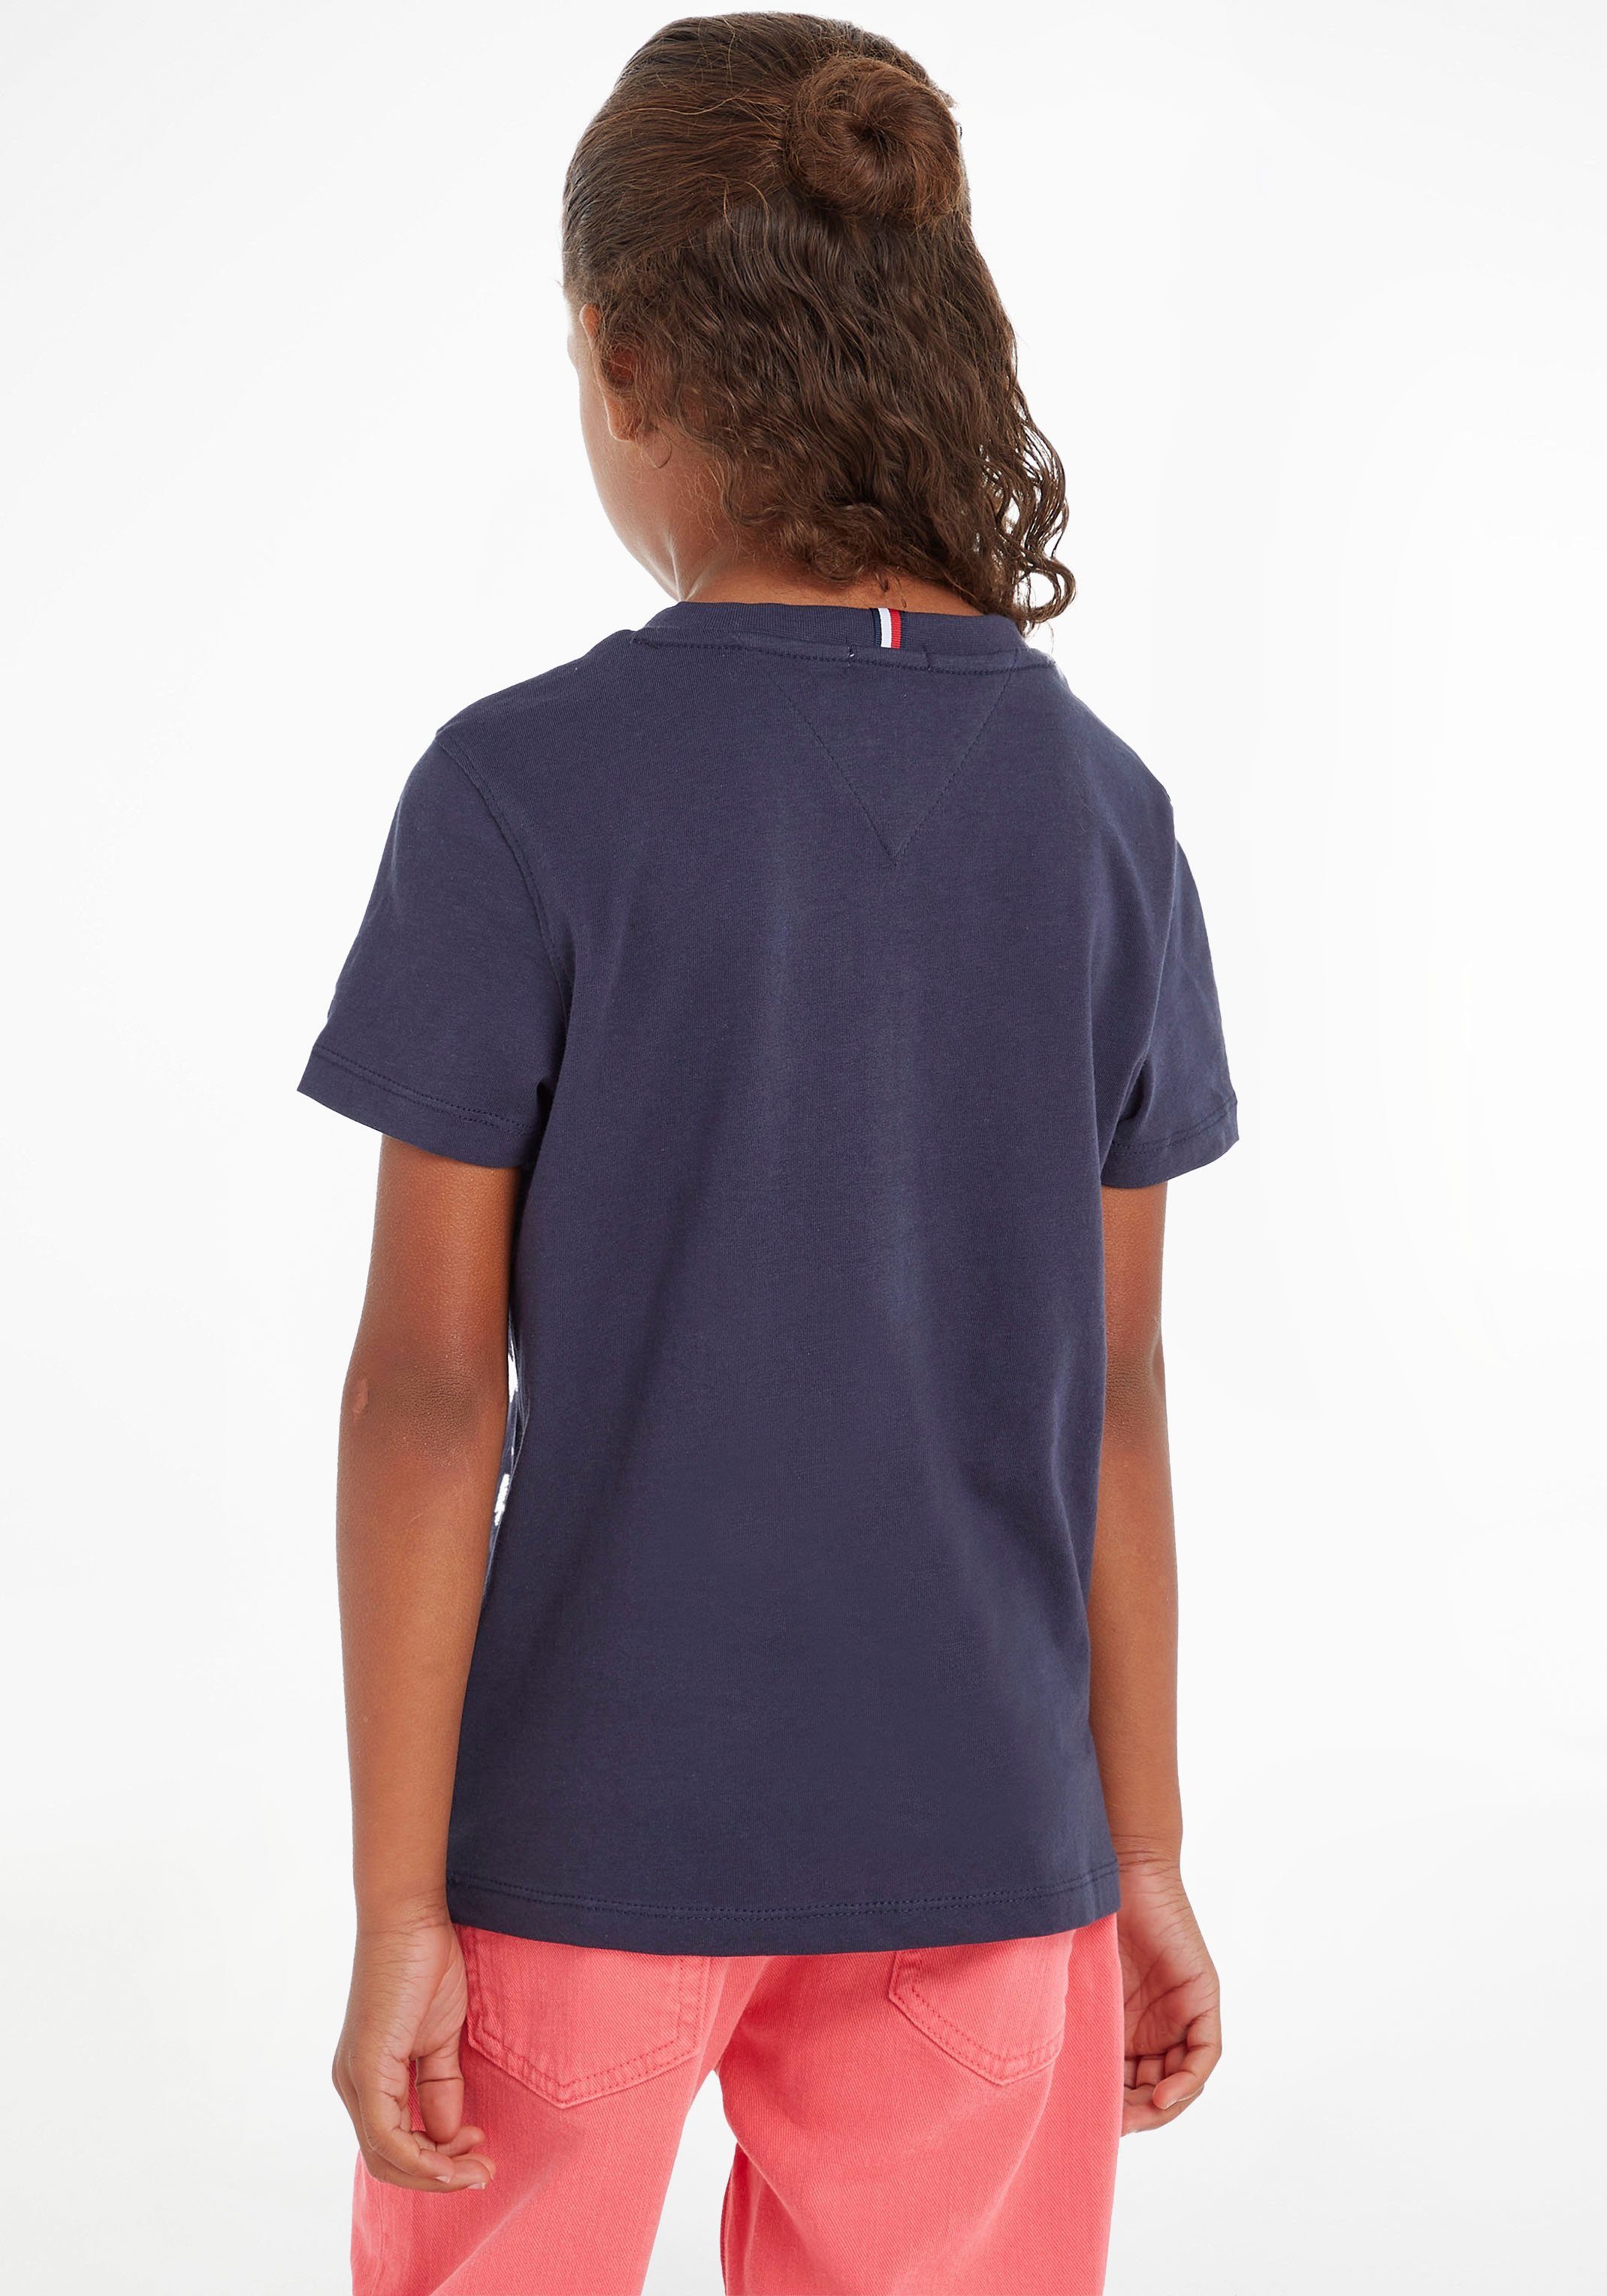 Kinder ESSENTIAL Jungen T-Shirt Hilfiger Kids und Tommy TEE Junior MiniMe,für Mädchen